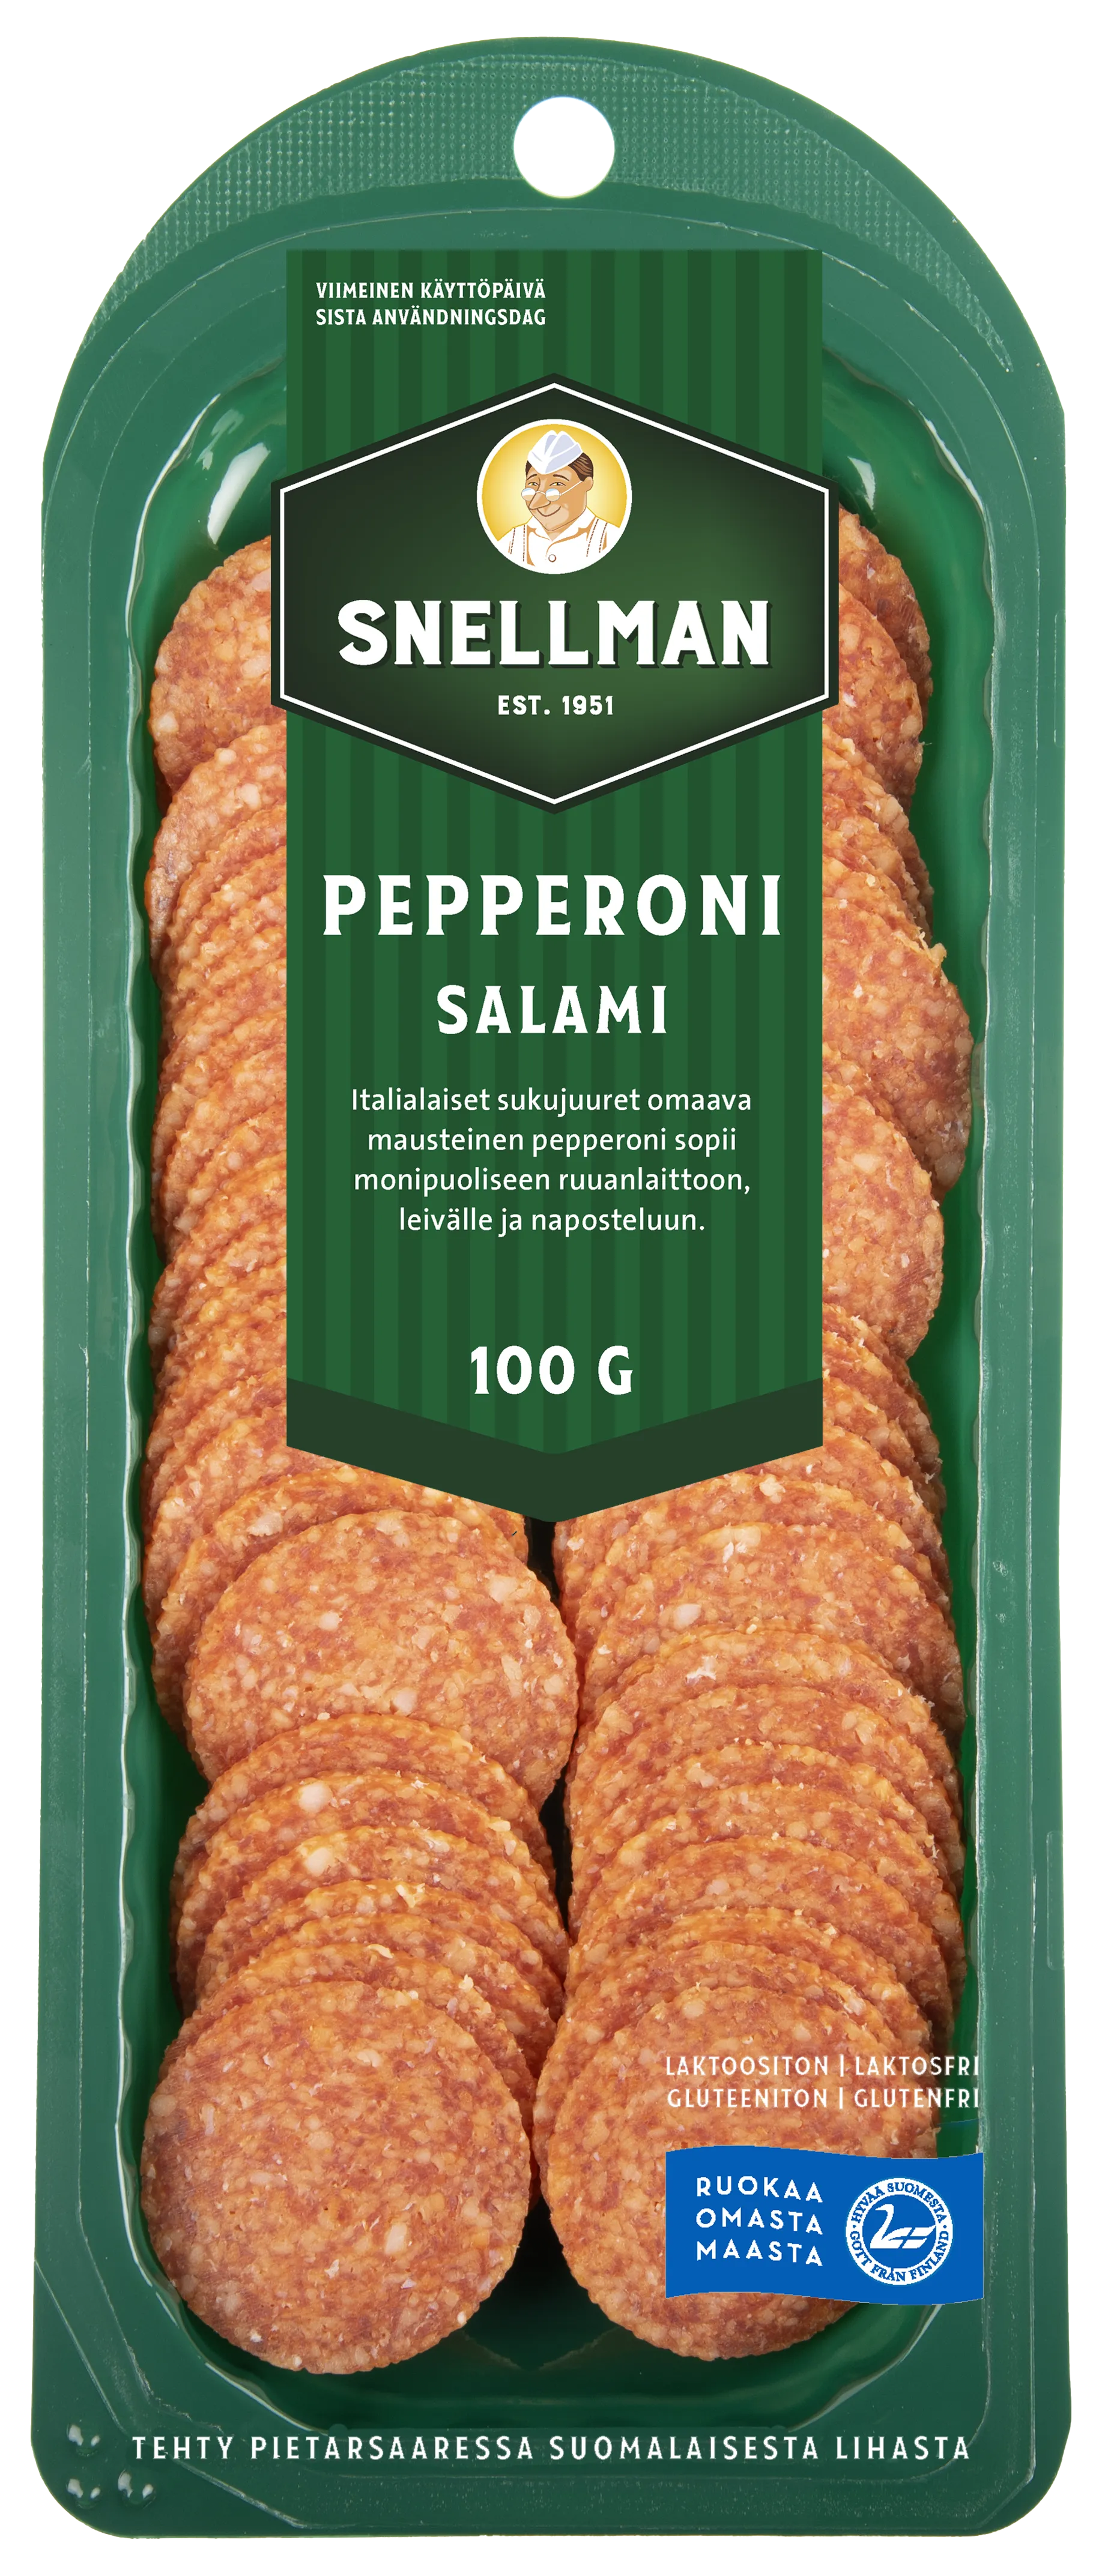 Pepperoni salami 100 g